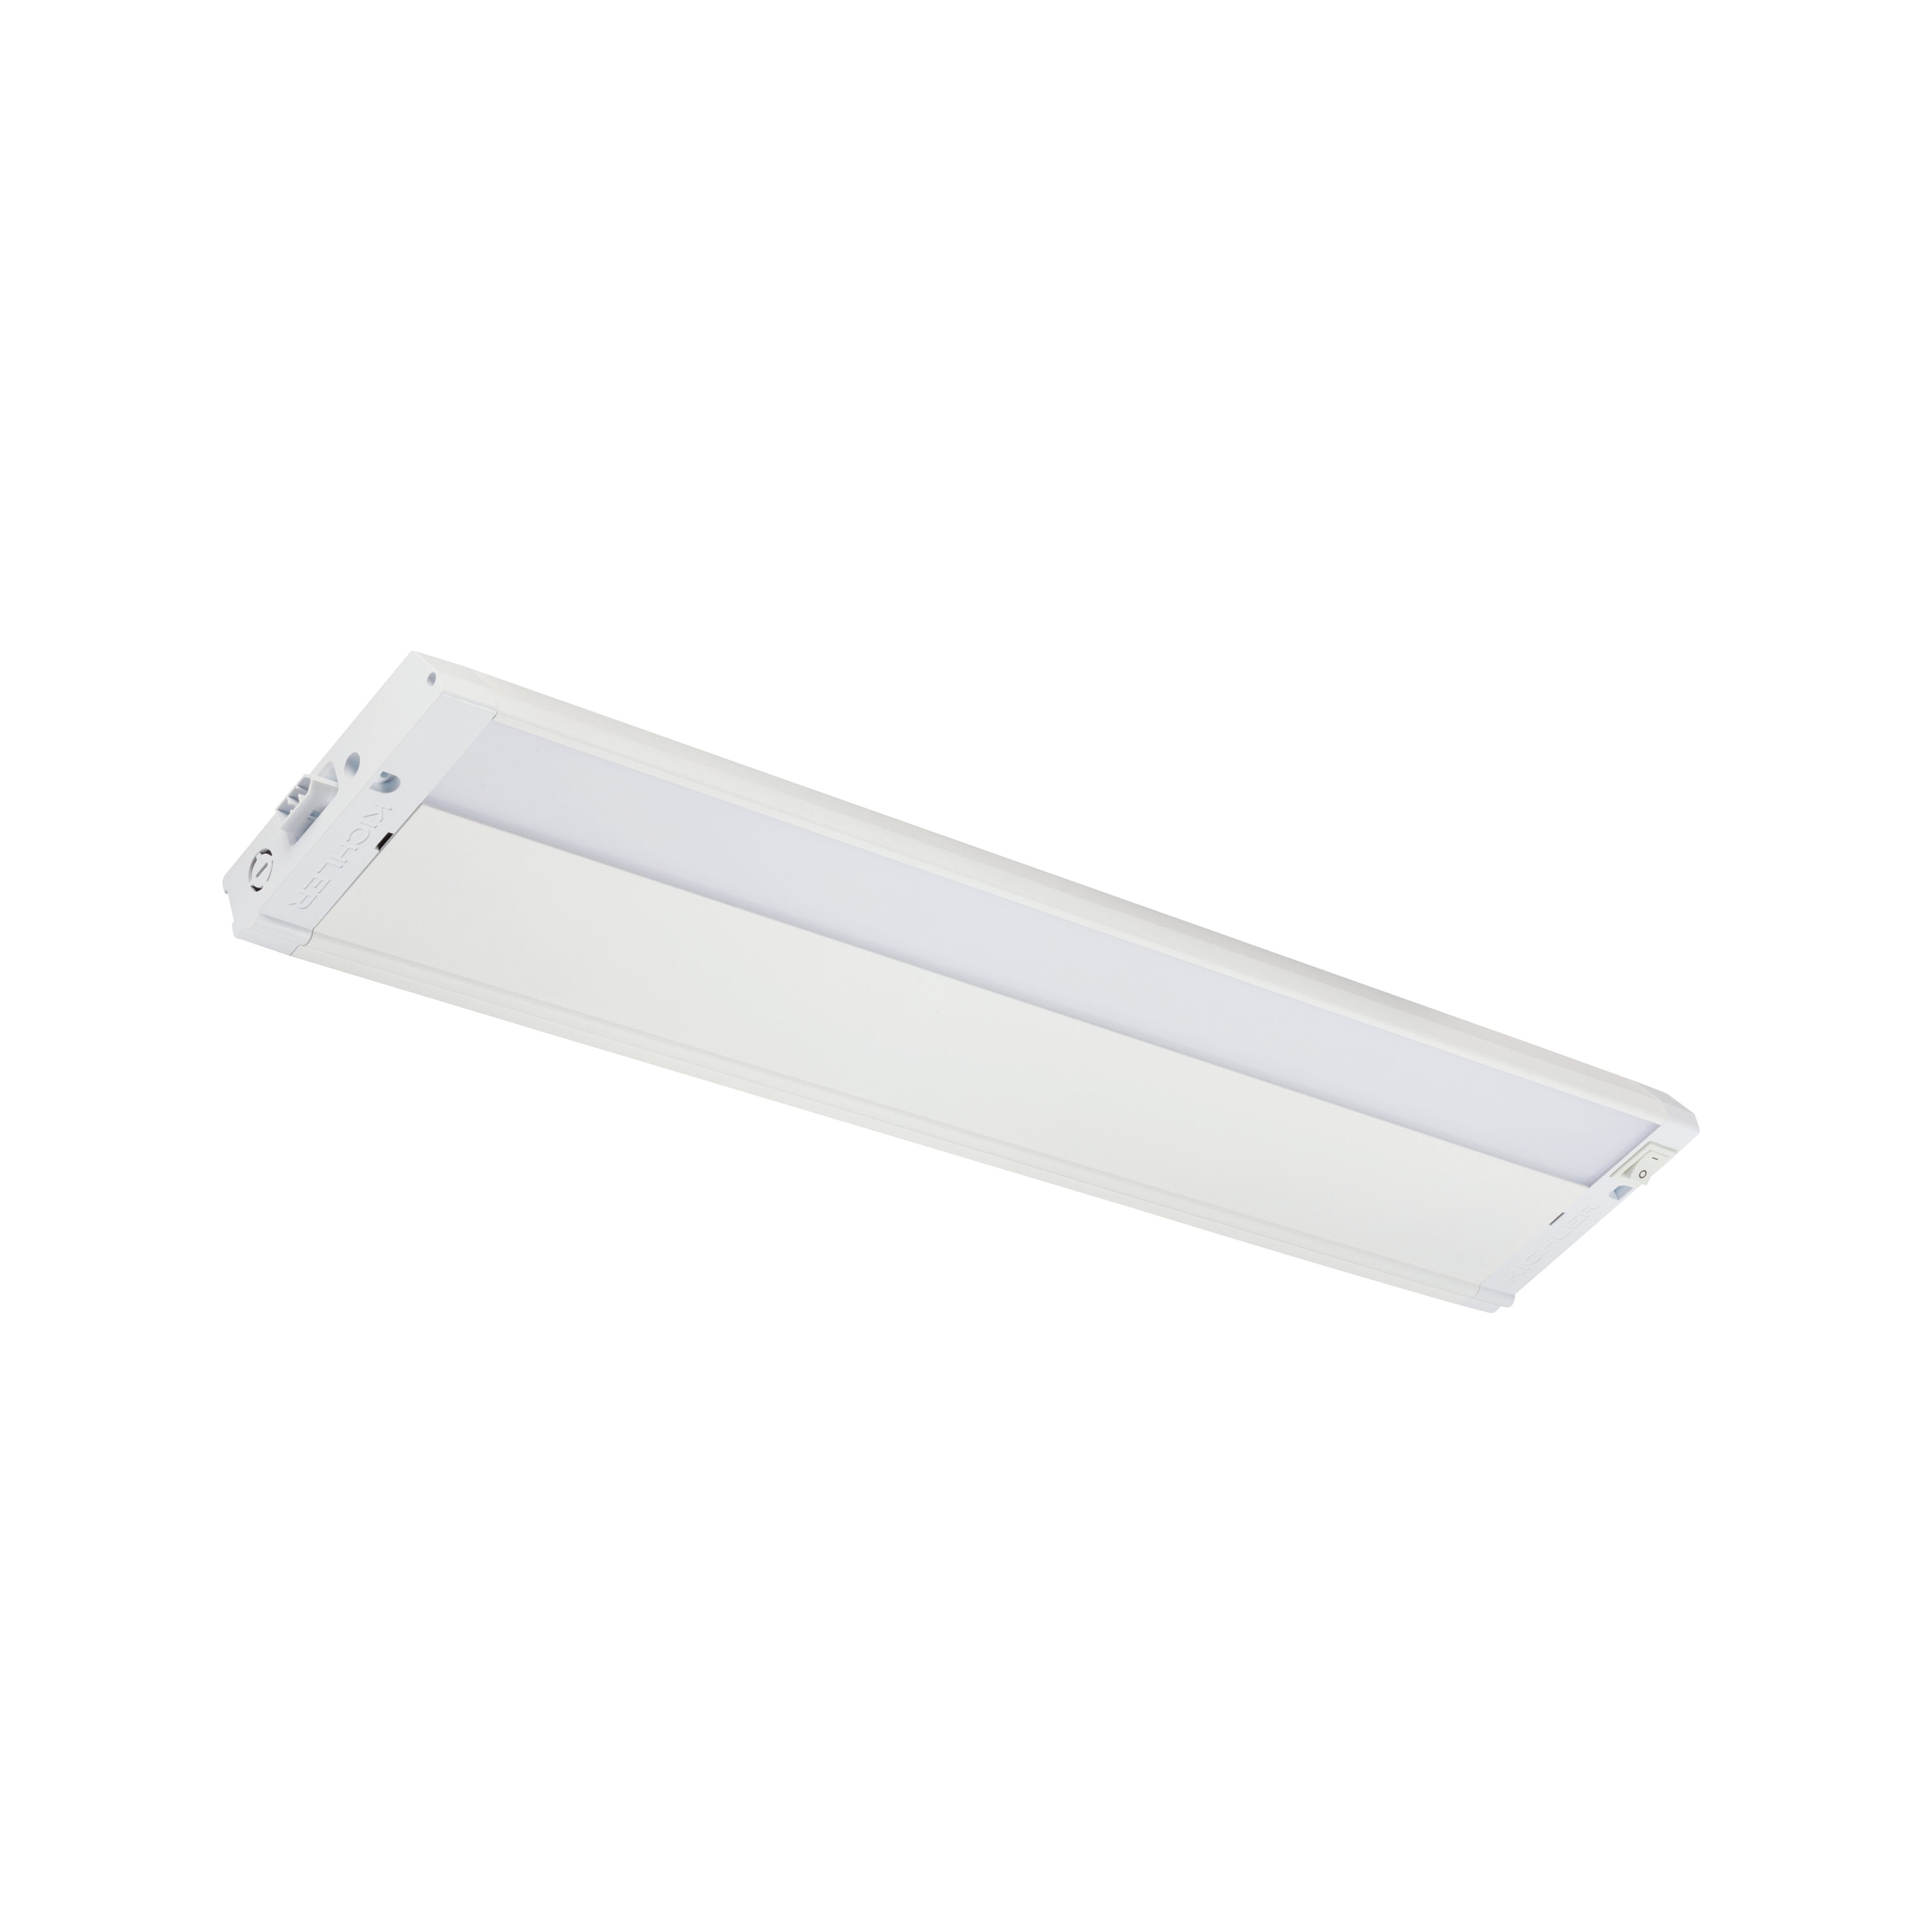 Kichler 4U Light Bar 22-in Hardwired LED Under Cabinet Light Bar Light in  the Under Cabinet Lights department at